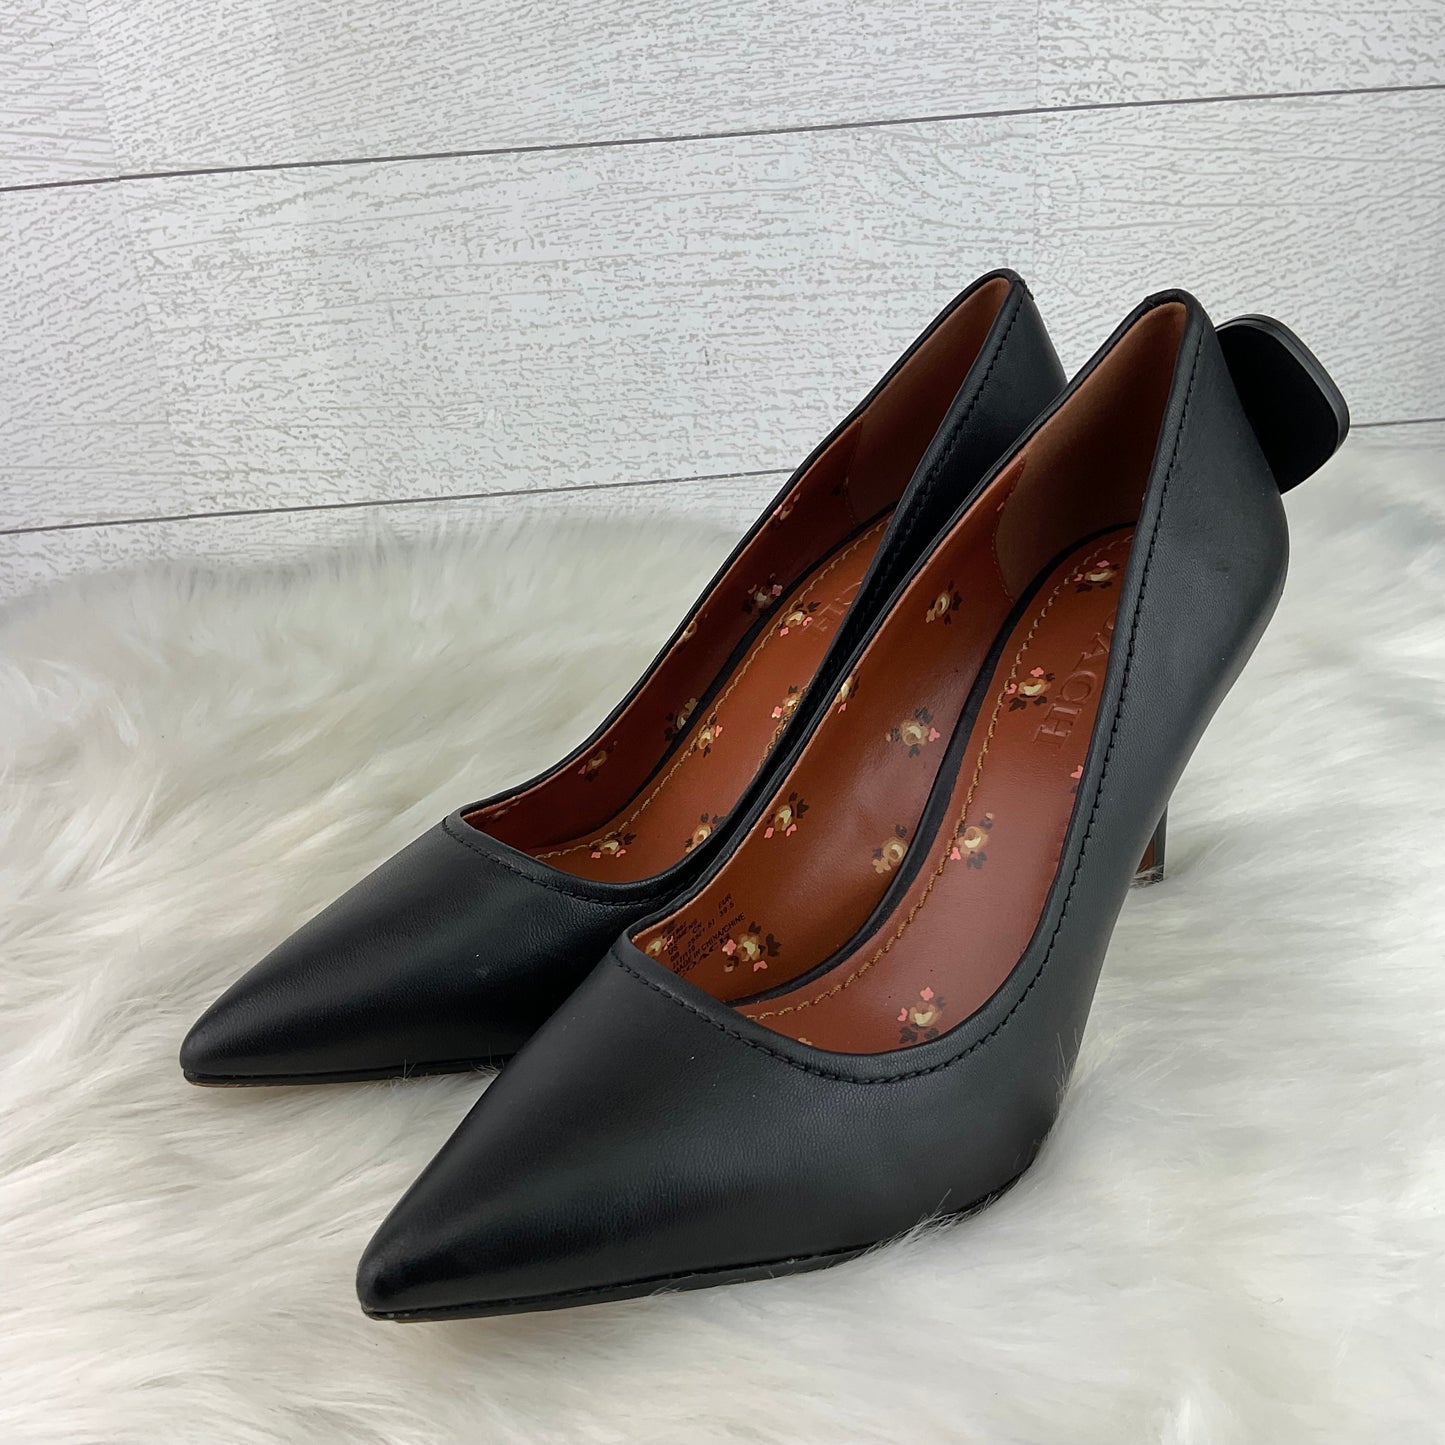 Black Shoes Heels Stiletto Coach, Size 9